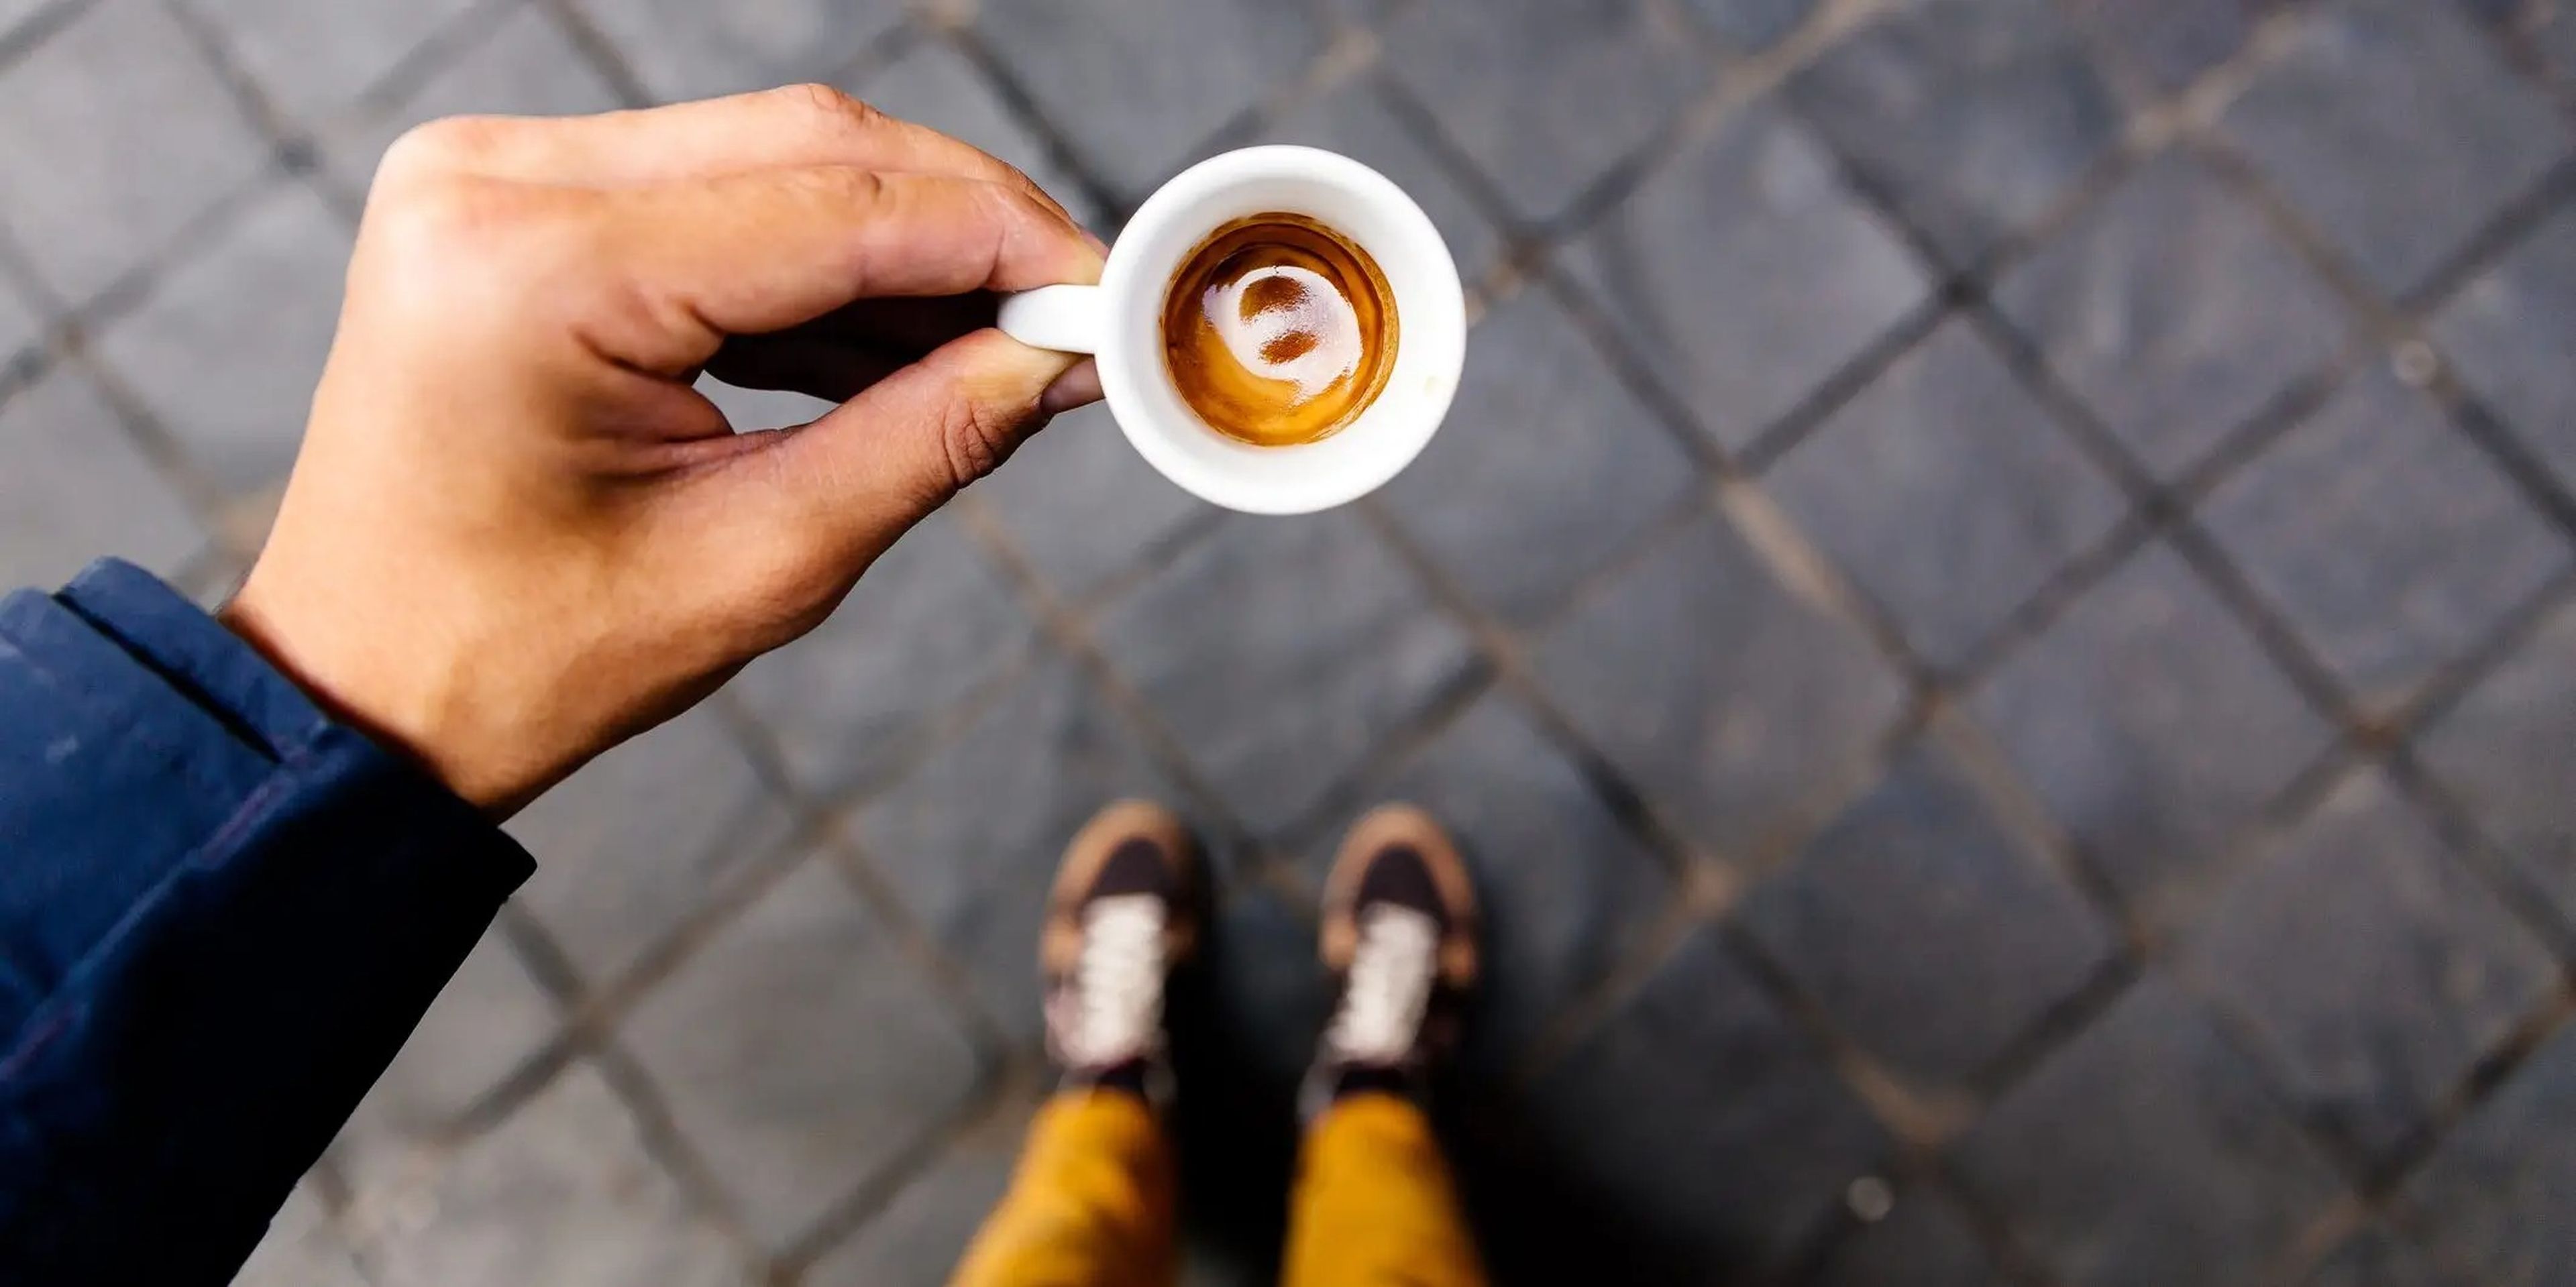 Puedes disfrutar tu espresso solo o con algún añadido como unas gotas de leche.